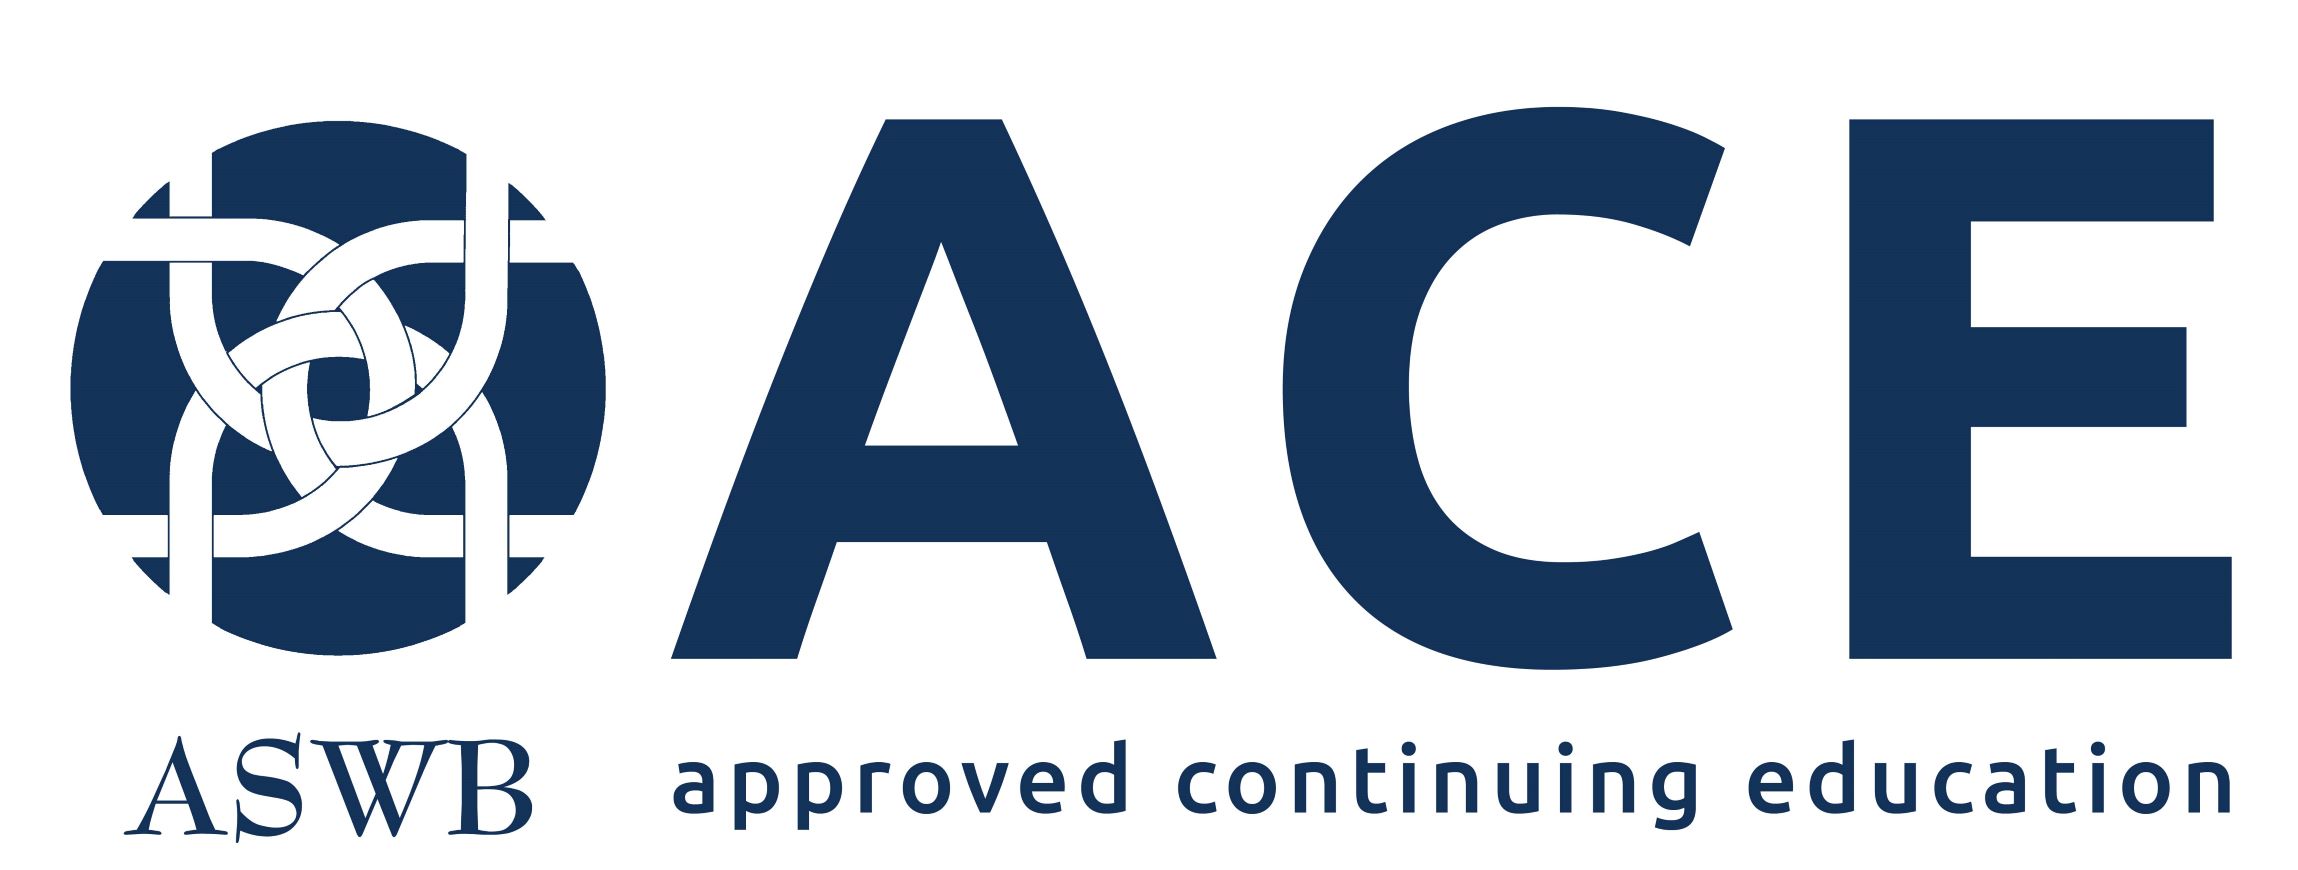 شعار ace